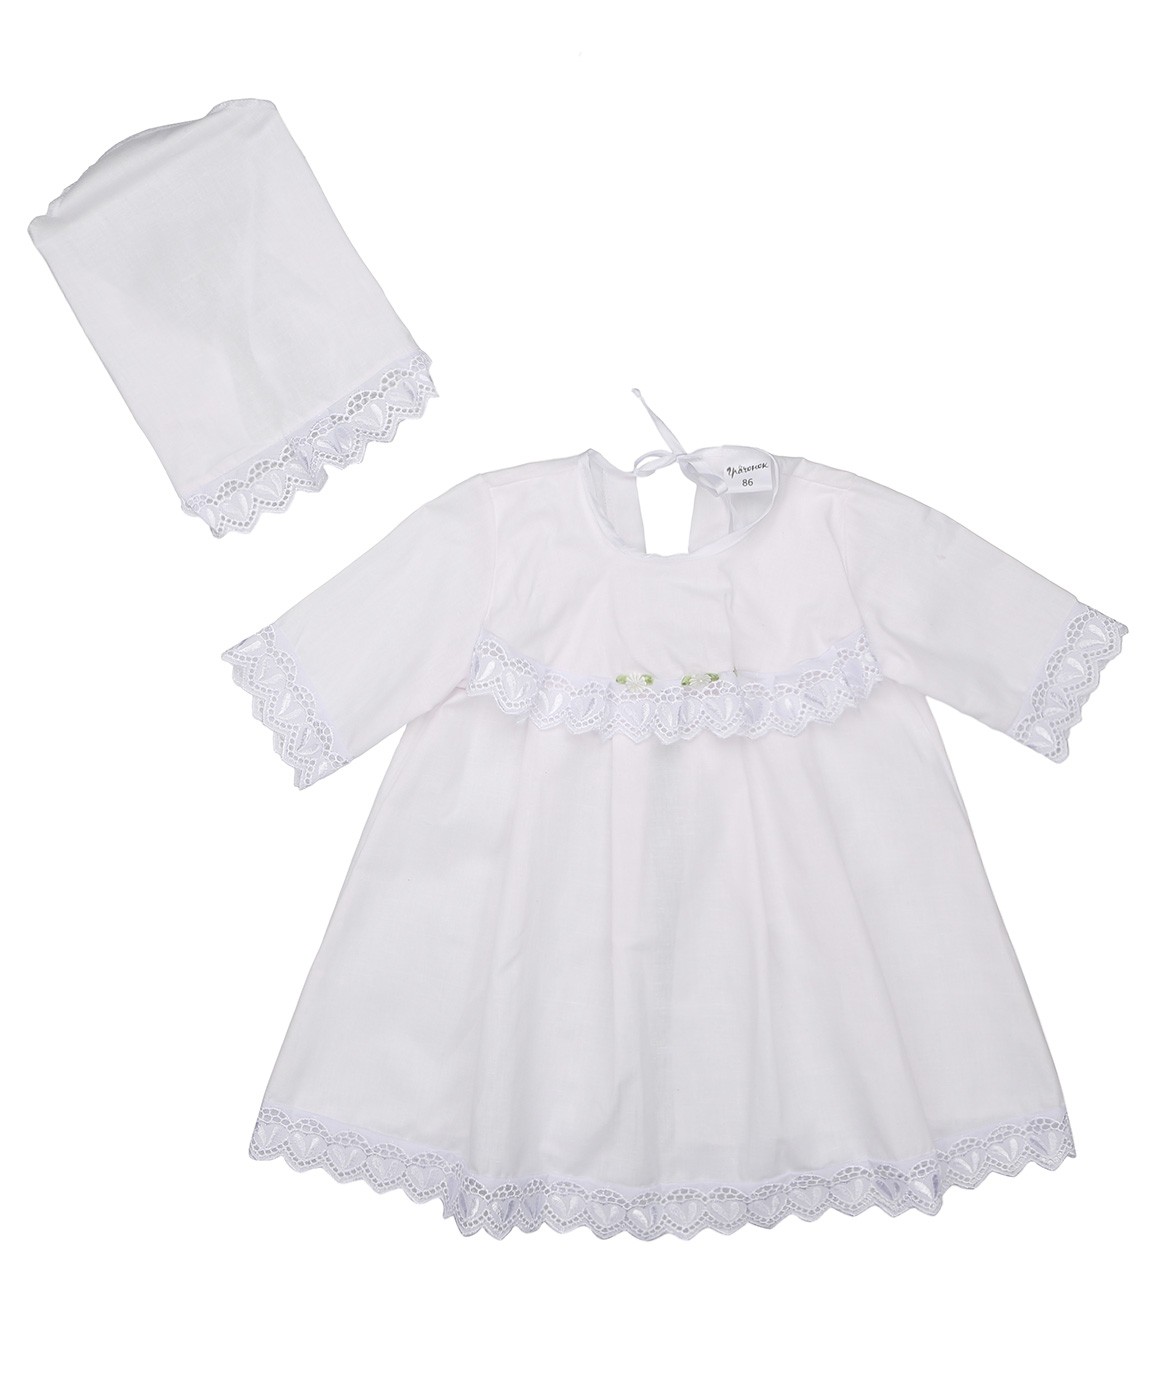 Г080-74 Крестильный комплект для девочки р,74 Однотонное платье, чепчик,бязь отбелённая - 100% хлопок,для девочек от  1  до 2-х лет.